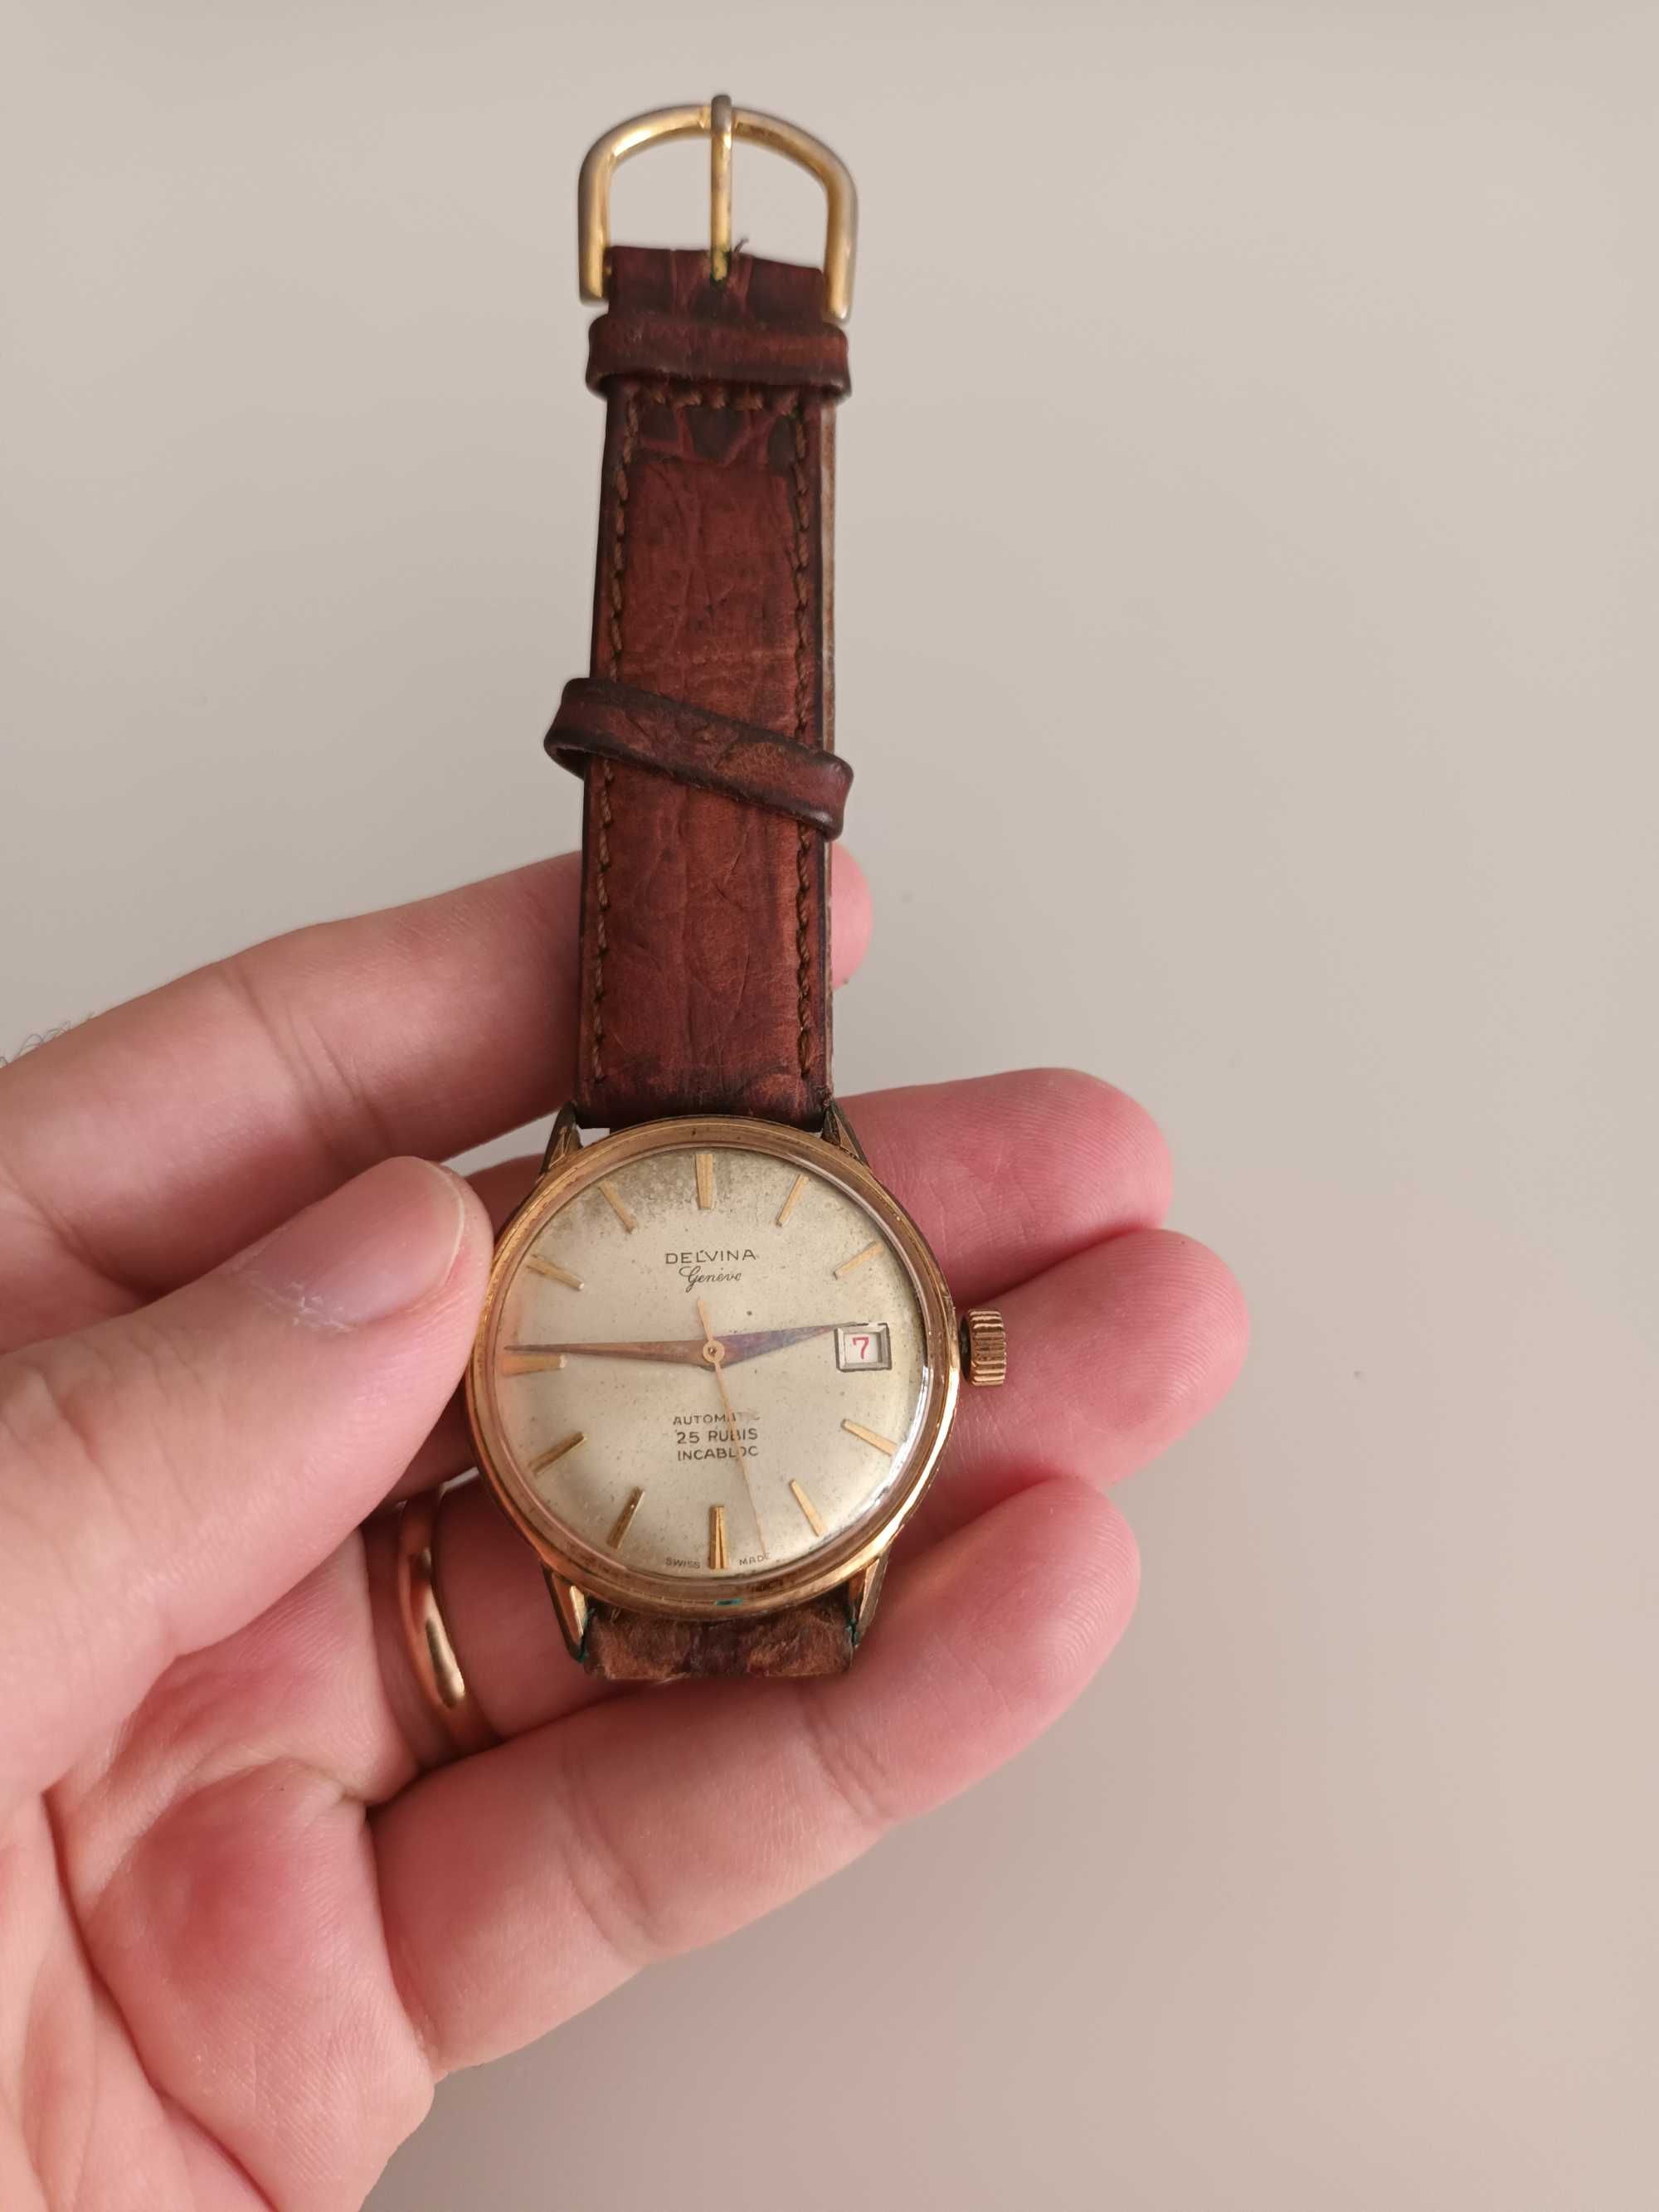 Relógio Delvina Automatic Genève 25 Rubis Incabloc Vintage